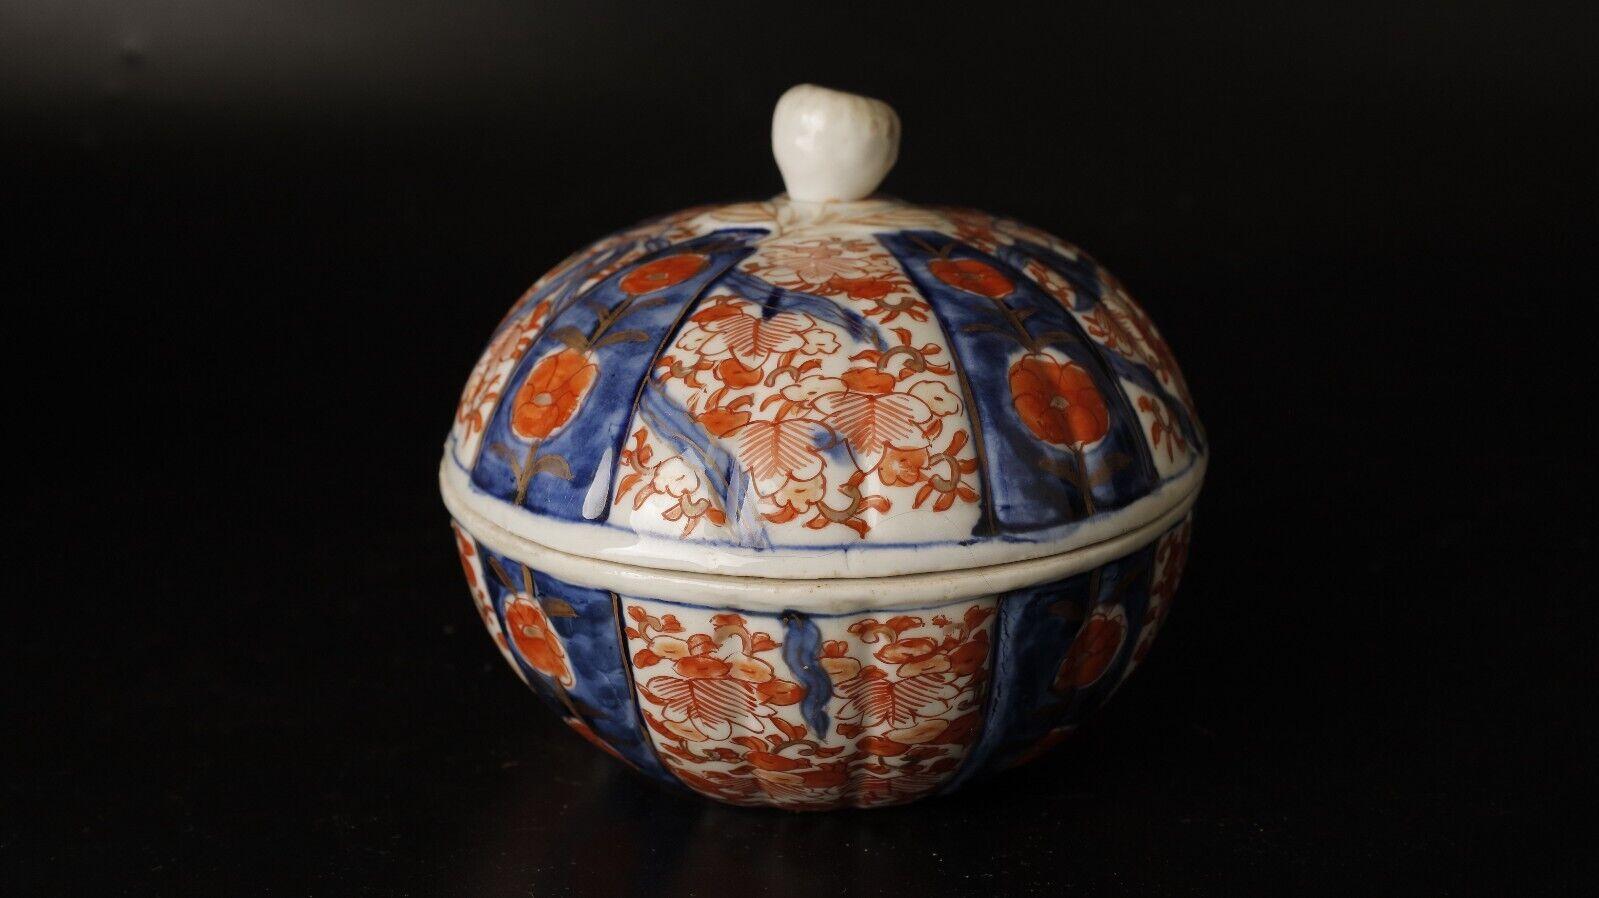 Très beau et rare bol couvert en porcelaine Imari peint à la main à l'origine

Ce très beau et rare bol couvert de porcelaine Imari peint à la main est un exemple stupéfiant de l'artisanat japonais. Il date de la fin de la période Edo, du 18e au 19e